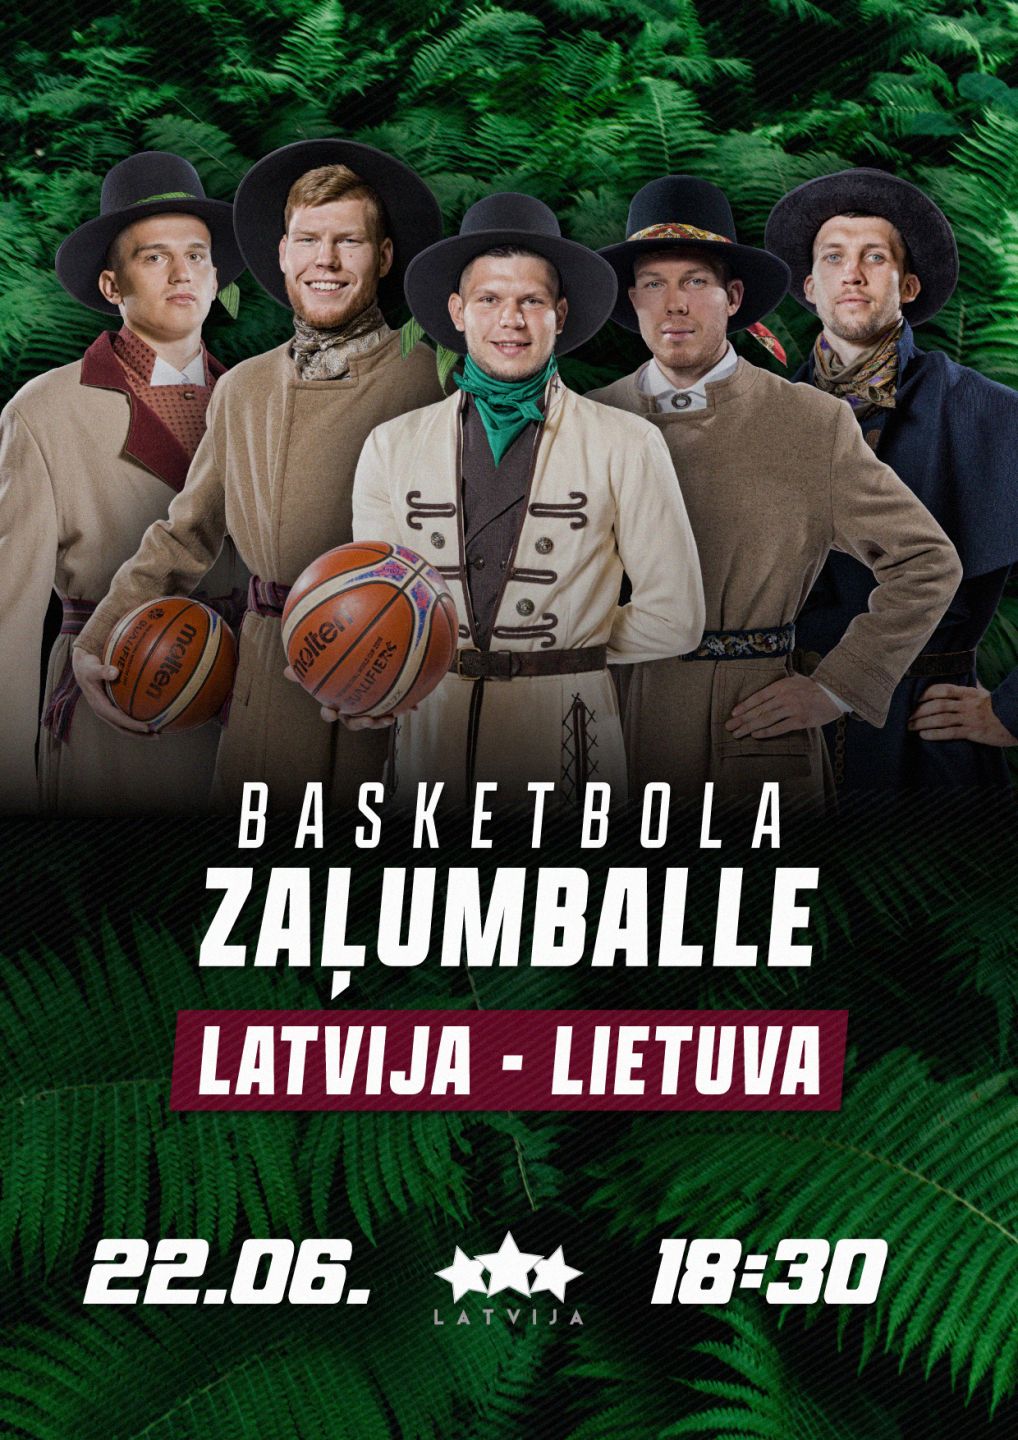 Production near Self-indulgence Latvija - Lietuva. Basketbola zaļumballe - BezRindas